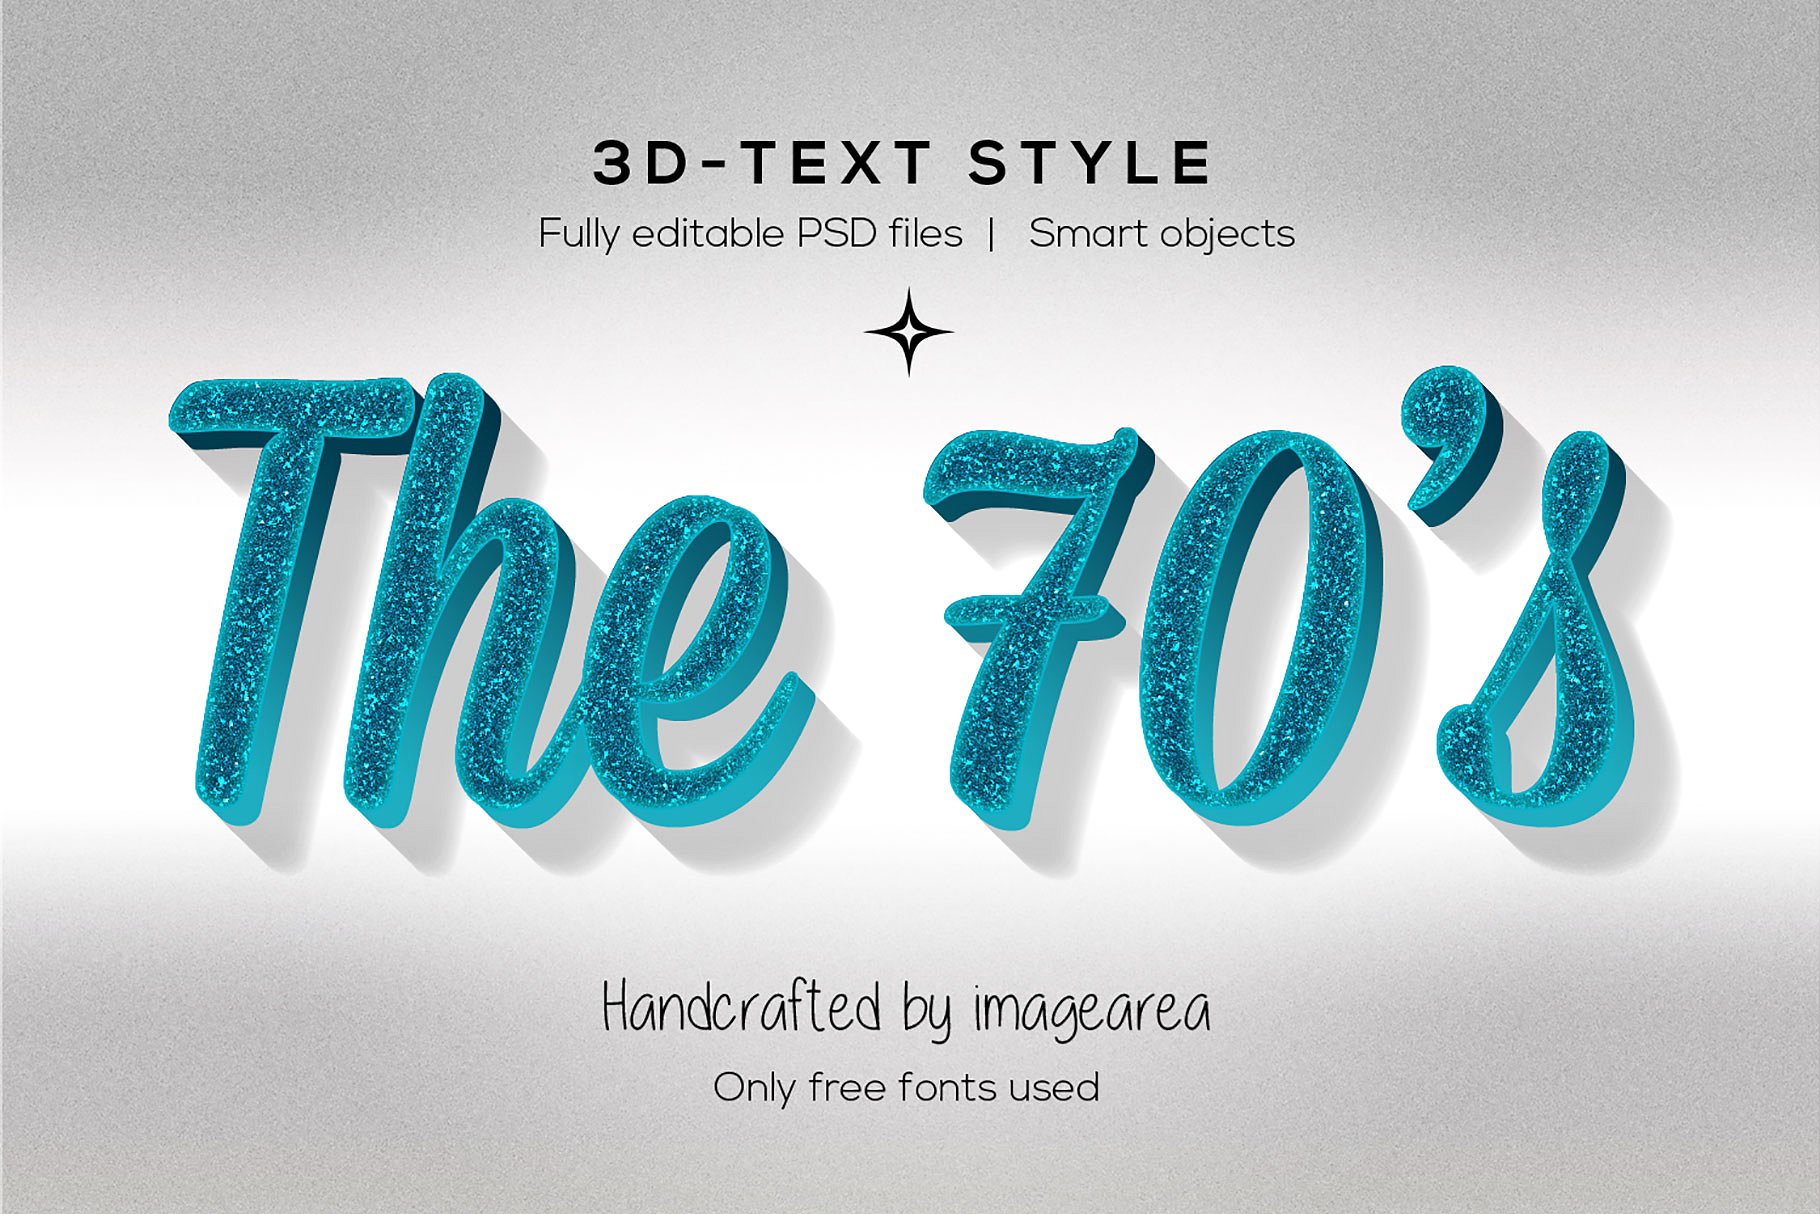 创意3D文本图层样式 Amazing 3D Text Styles插图(7)